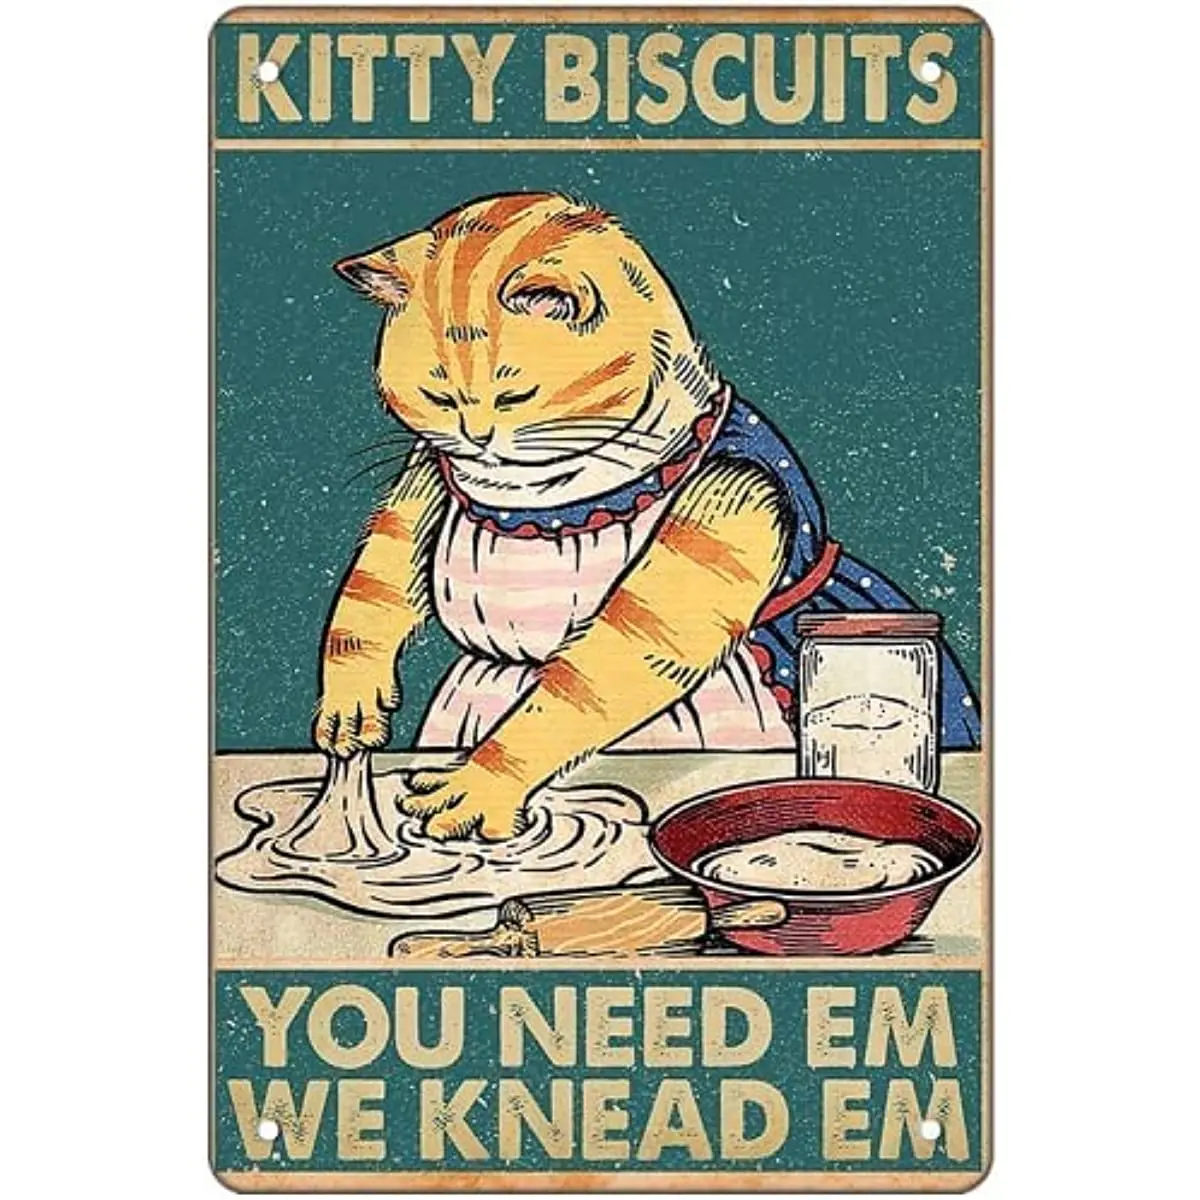 Kitty Biscuits You Need Em We Knead Em, cartel Retro de Metal, cartel Vintage de gato para el hogar, restaurante, cocina, decoración familiar para hornear